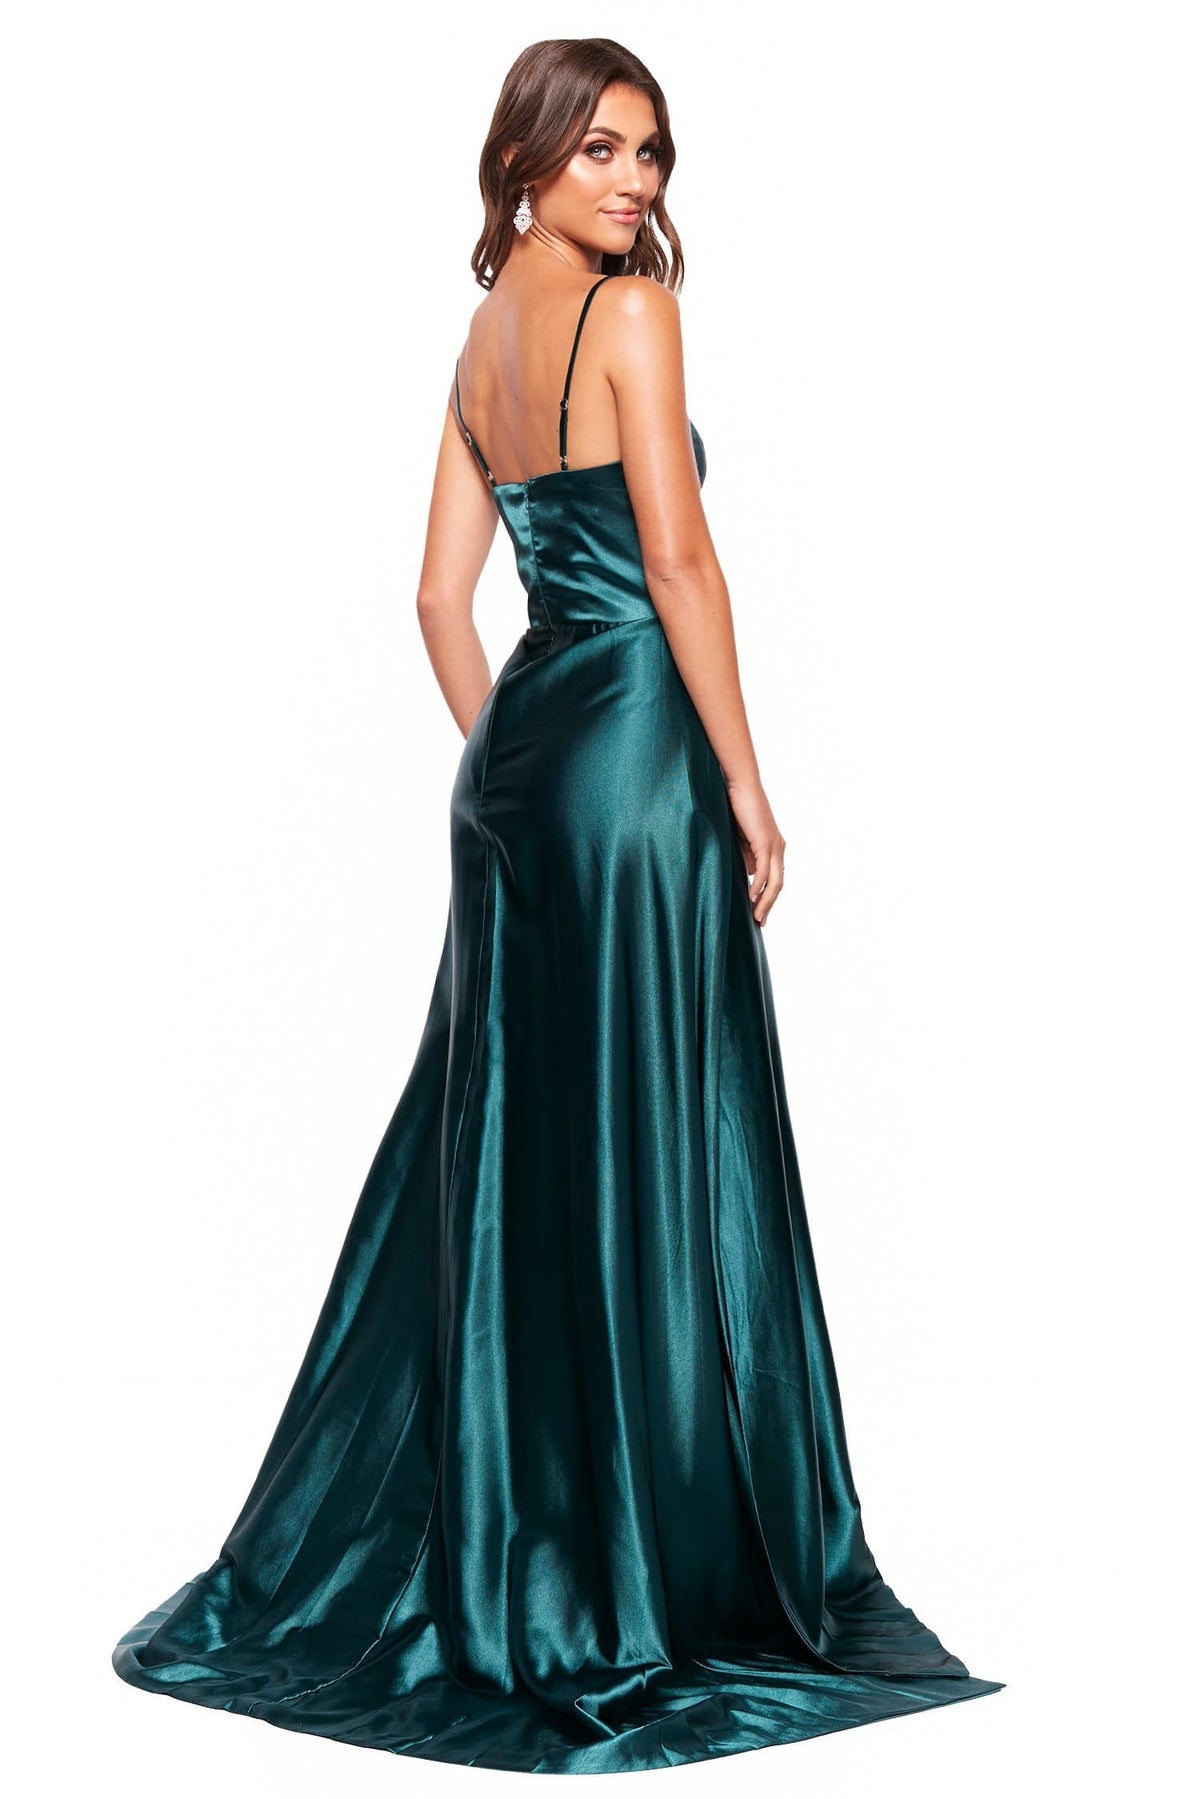 Aandn Vanessa Emerald Satin Gown With Scoop Neck And Slit Aandn Luxe Label 